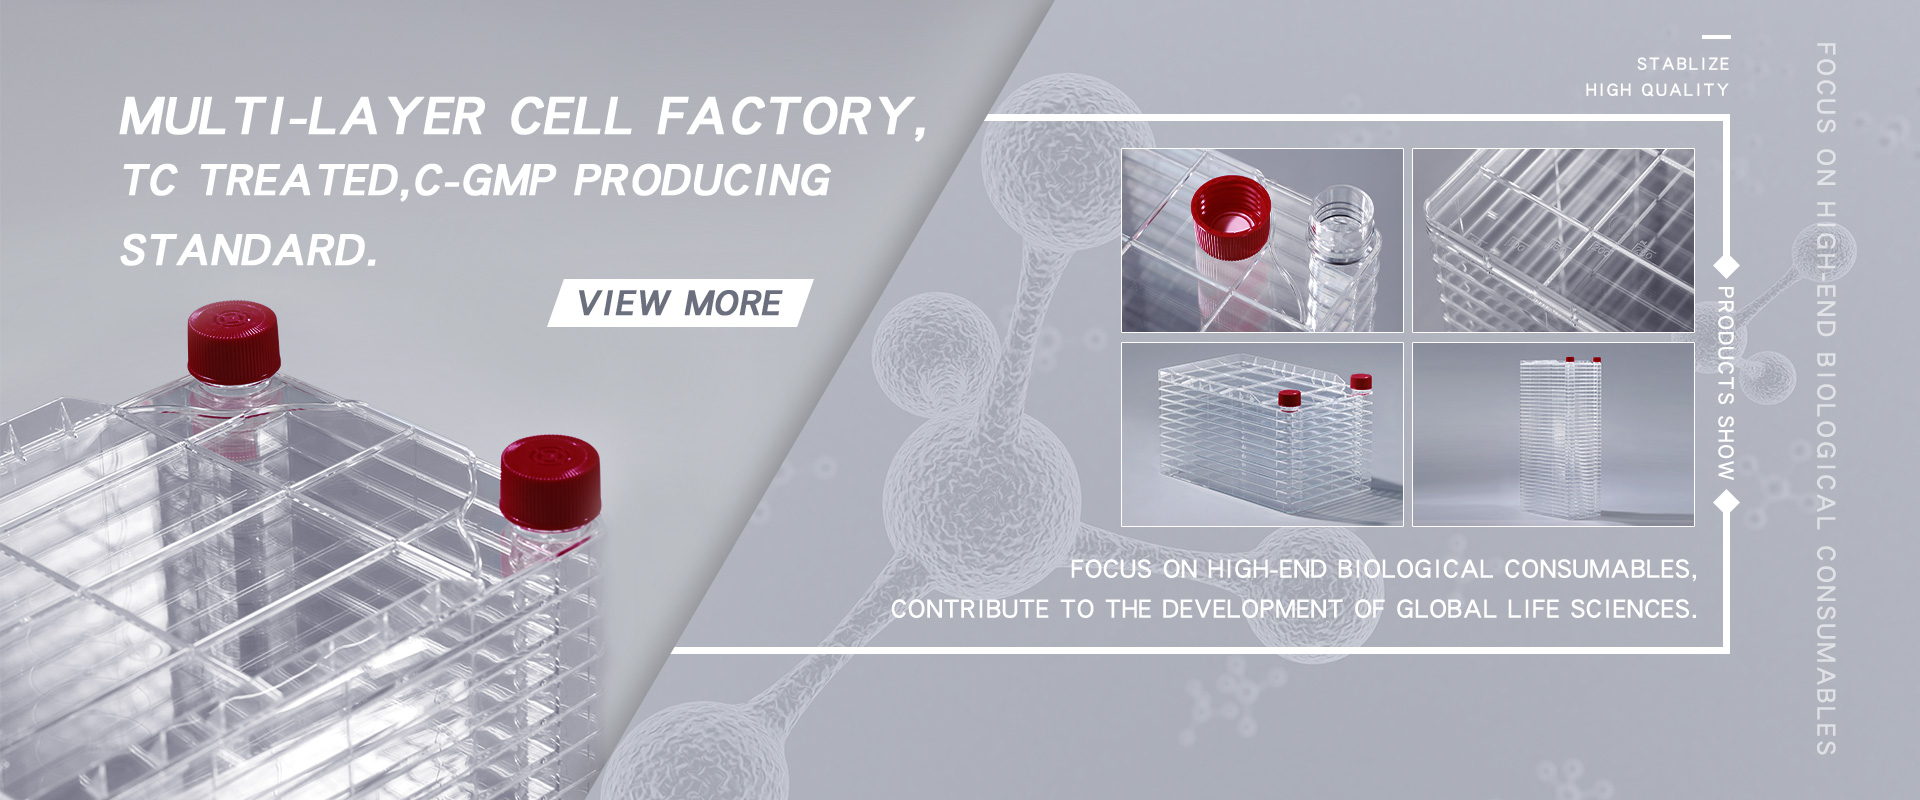 Фабрика за многослойни клетки